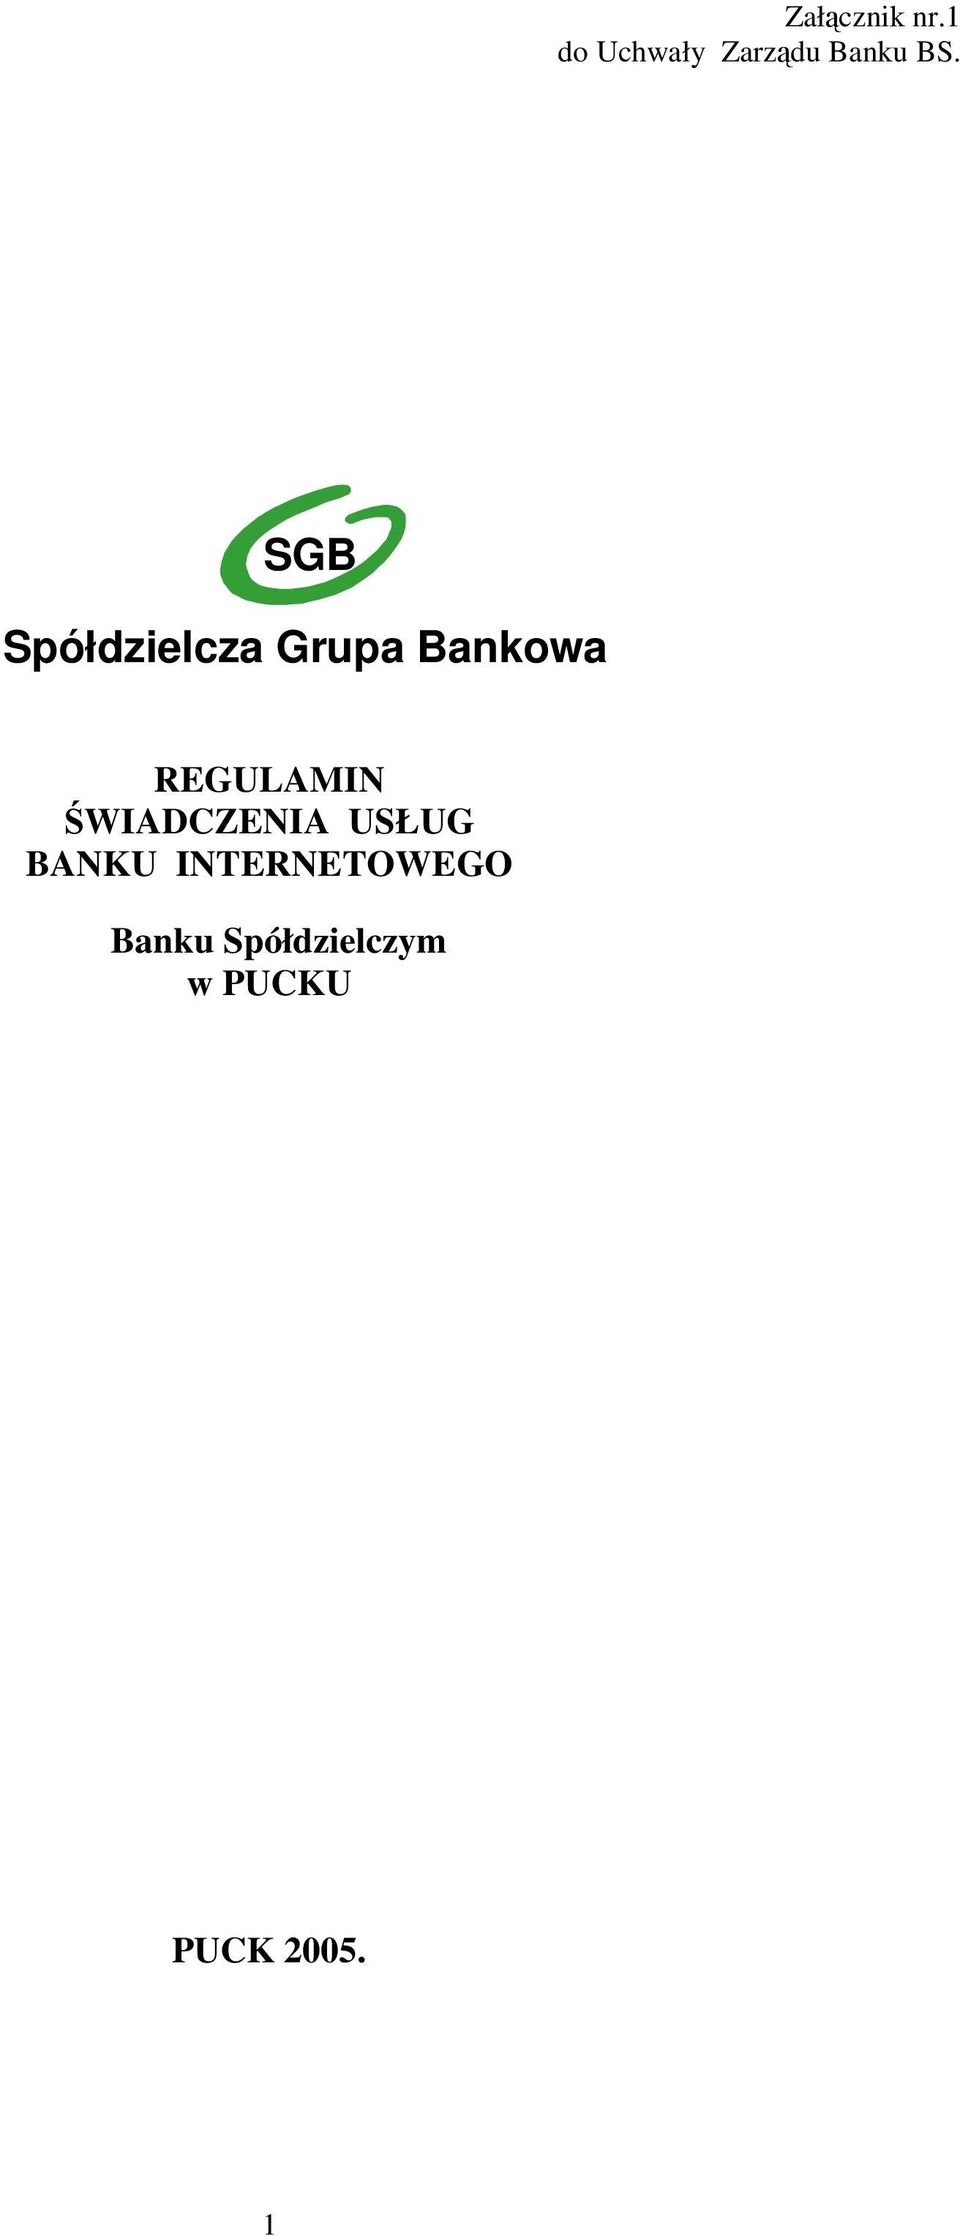 SGB Spółdzielcza Grupa Bankowa